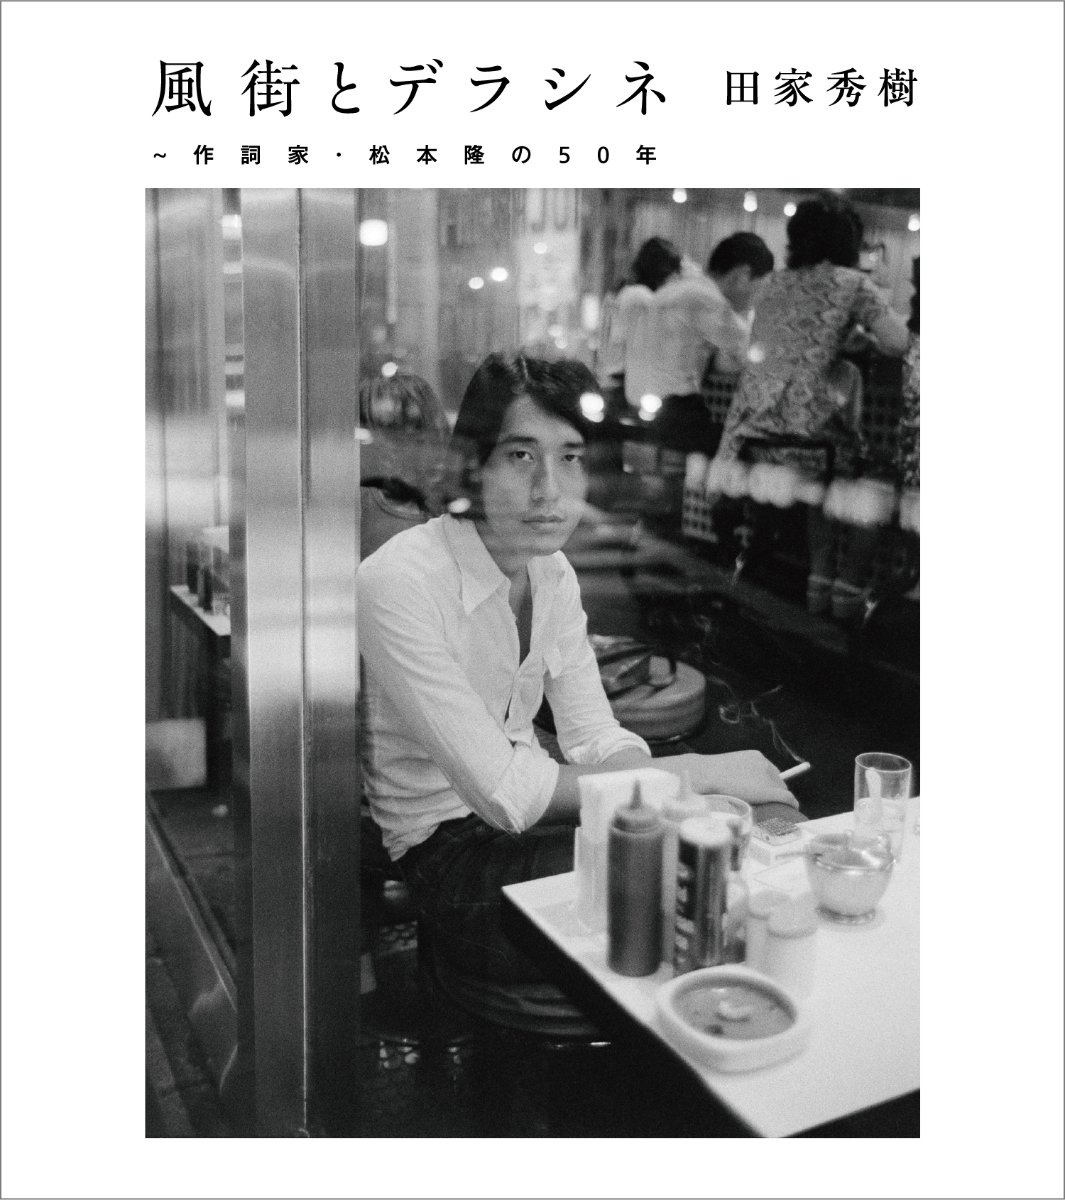 CD Shop - MATSUMOTO, TAKASHI KAZEMACHI & DERACINE LYRICIST: TAKASHI MATSUMOTO 50 YEARS